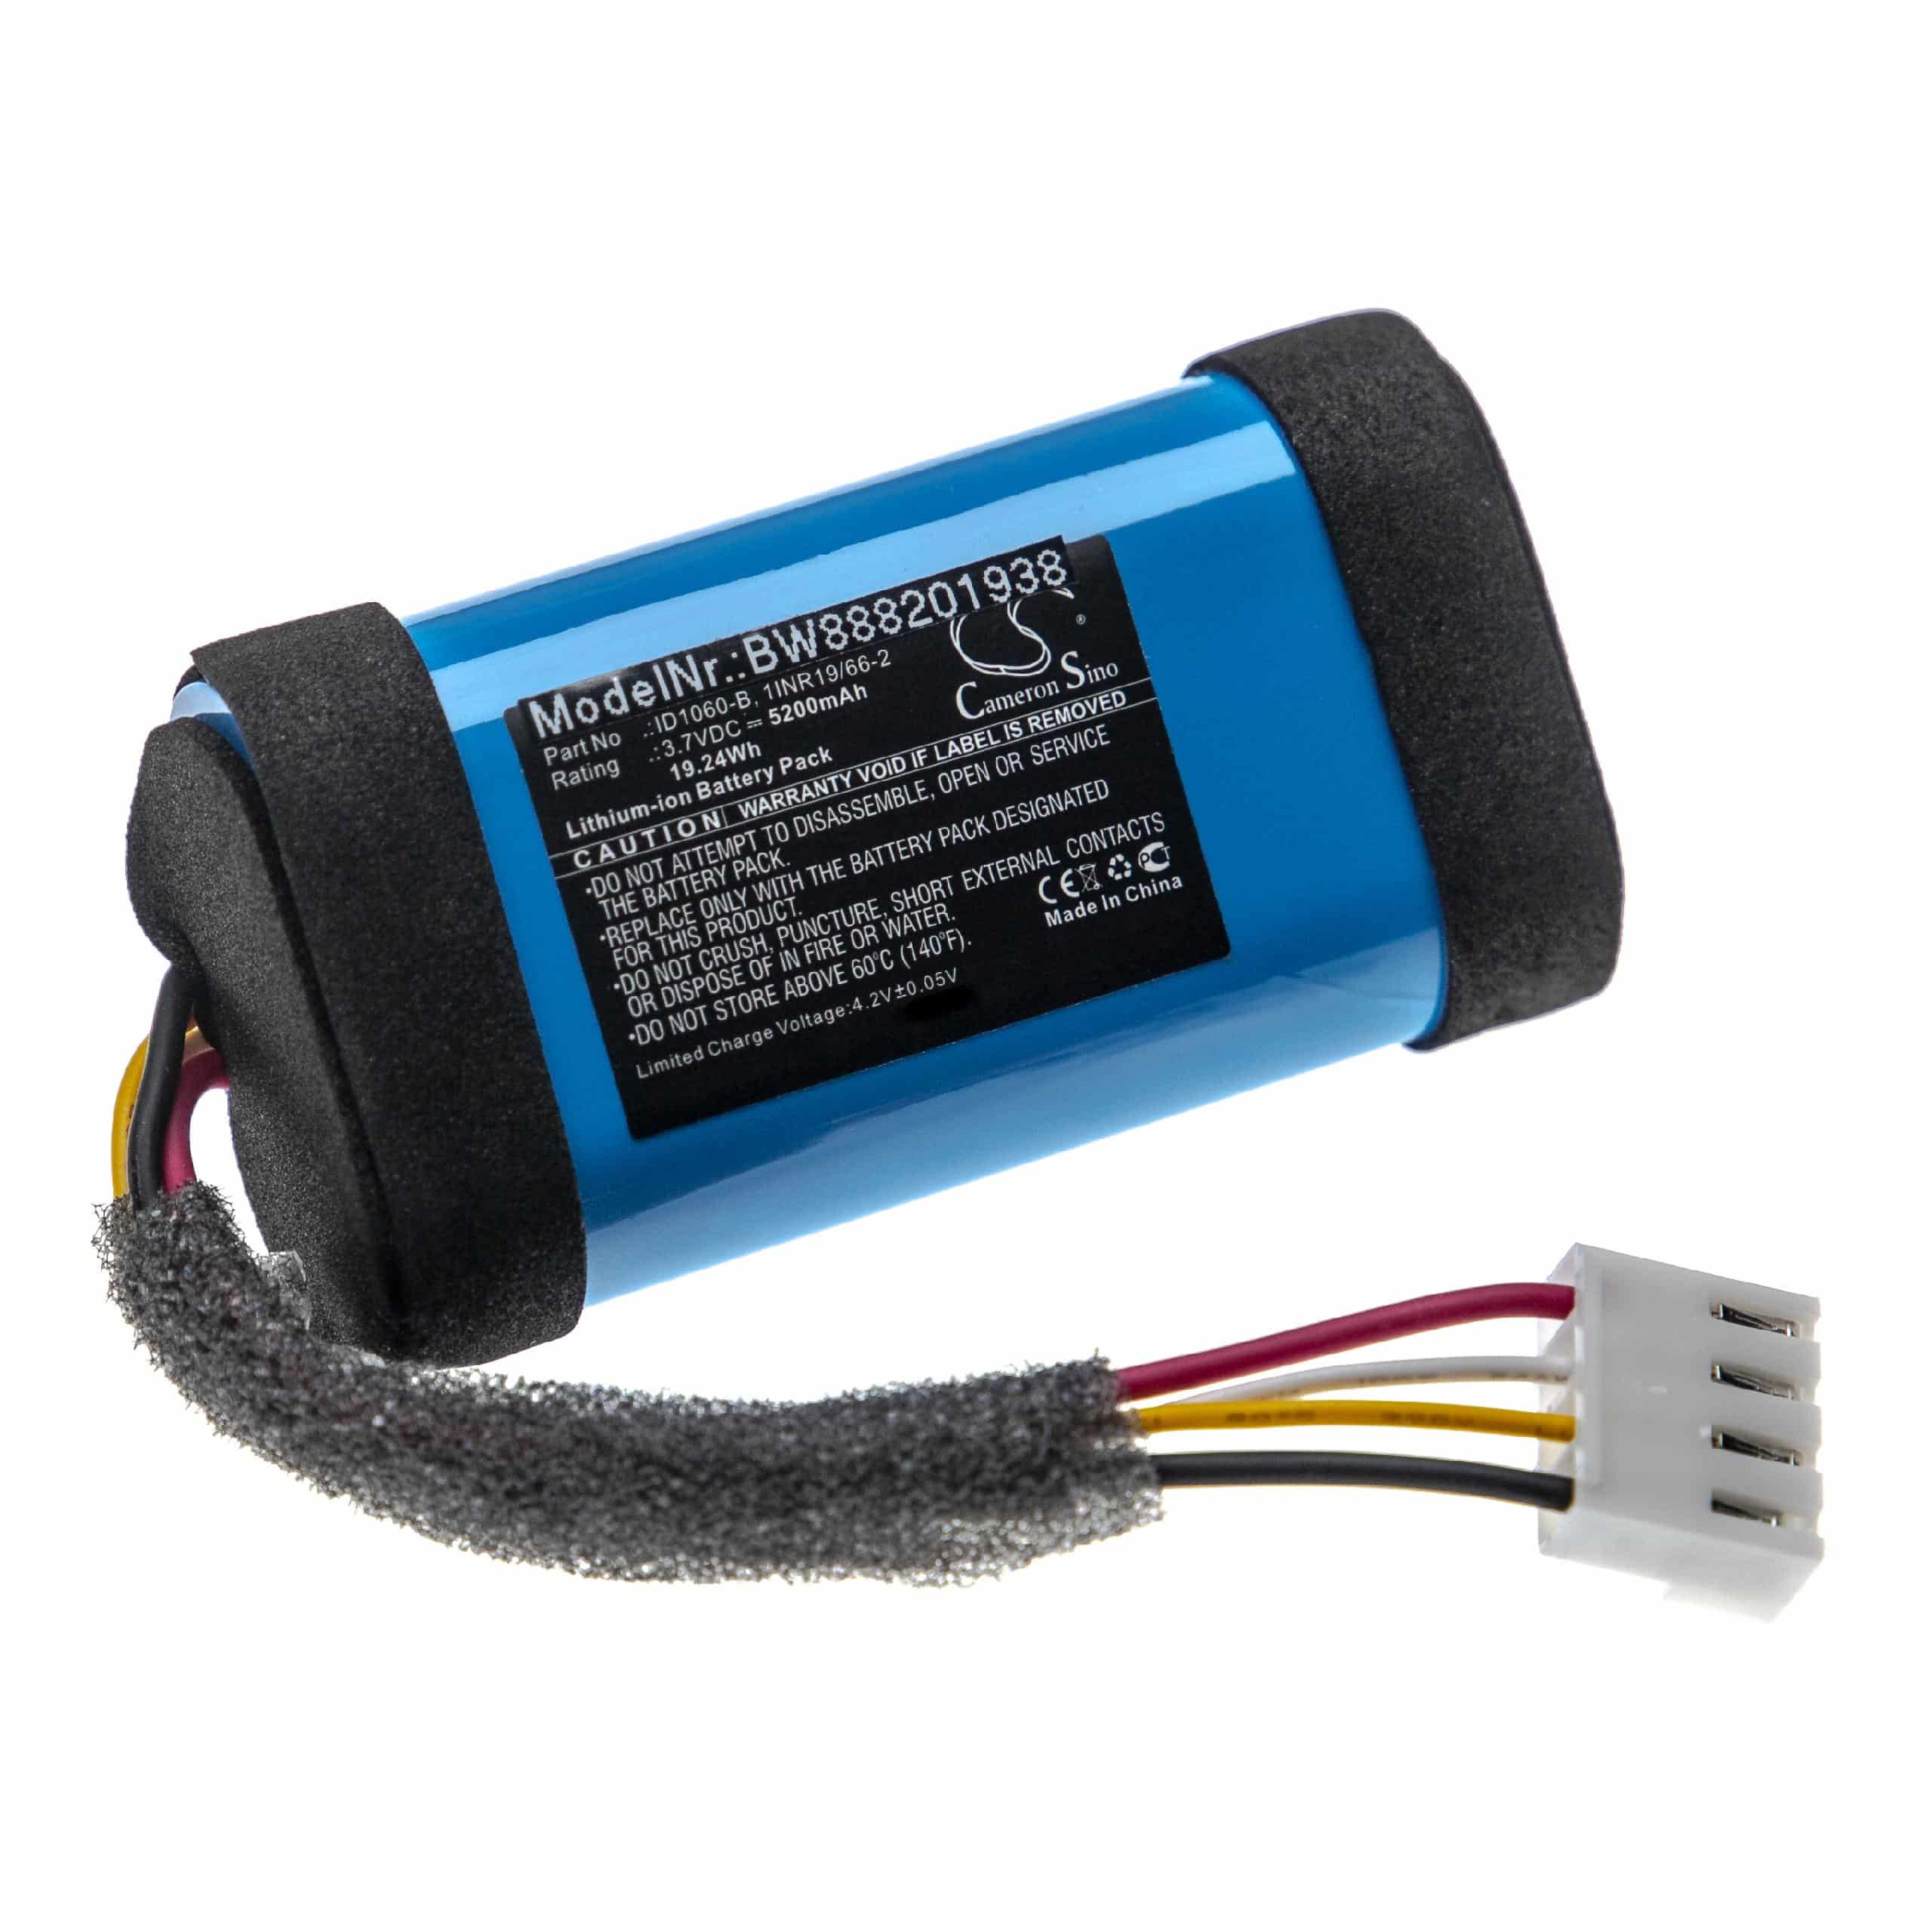 Akumulator do głośnika JBL zamiennik JBL 49-364800-1BAT2-A, ID1060-A, 1INR19/66-2 - Li-Ion 5200 mAh 2 ogniwa